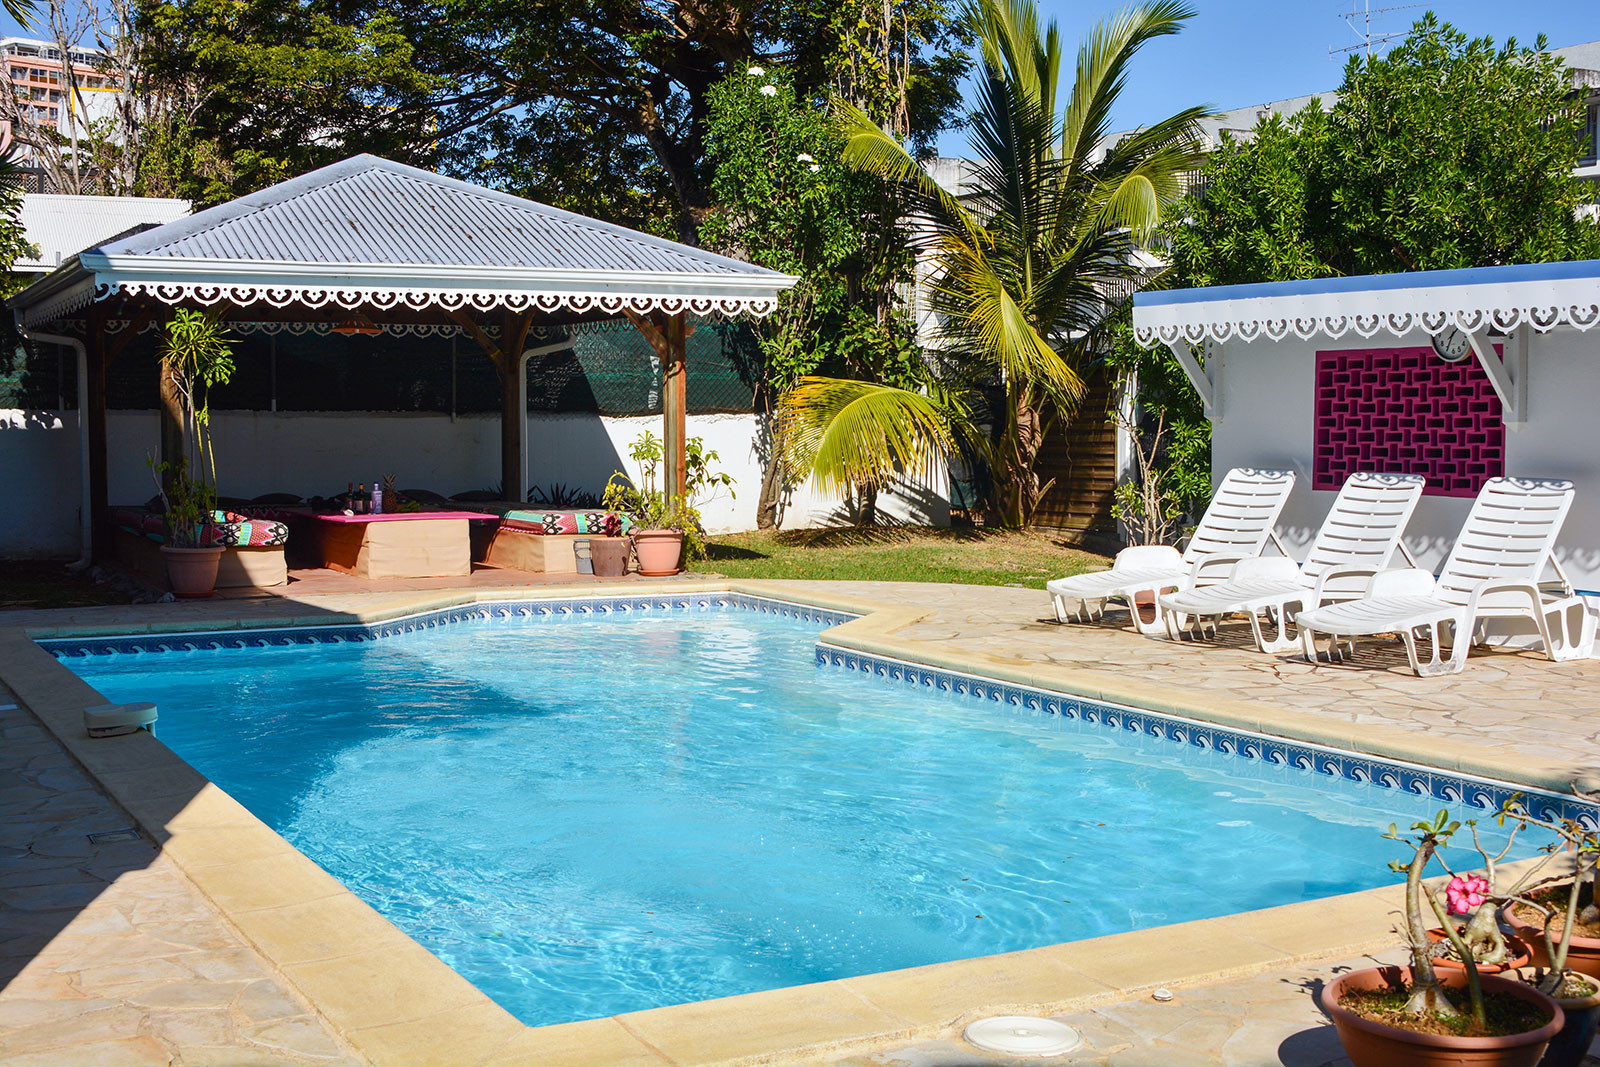 SOLEIL BLEU F2 location Fort de France Martinique - Bienvenue à la piscine de Soleil Bleu